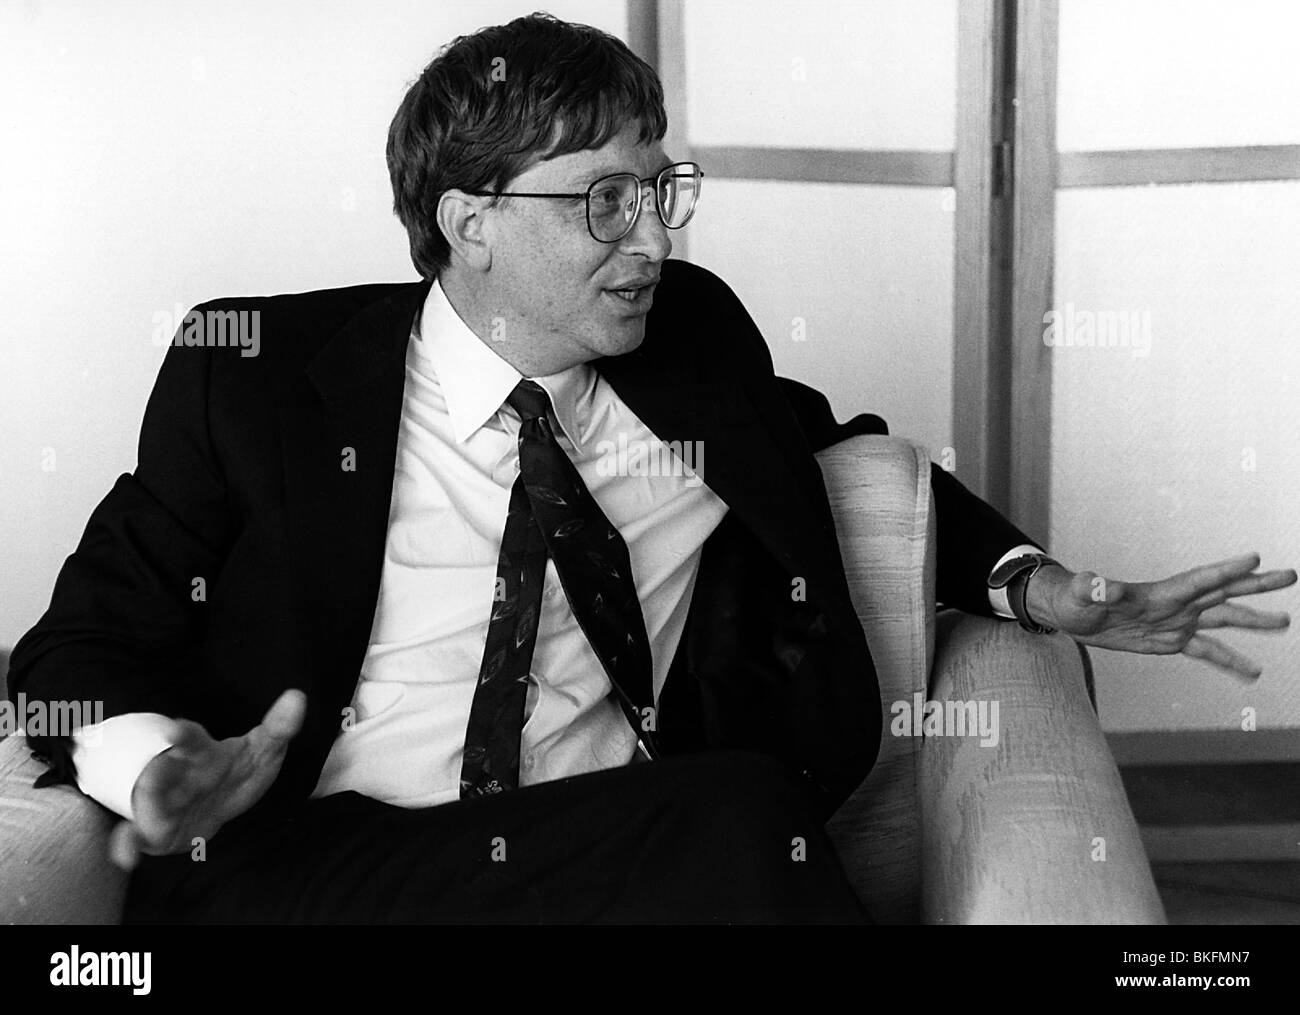 Gates, William Henry 'Bill', * 28.10.1955, magnat américain des affaires, fondateur de LA société MICROSOFT, demi-longueur, 1992, Banque D'Images